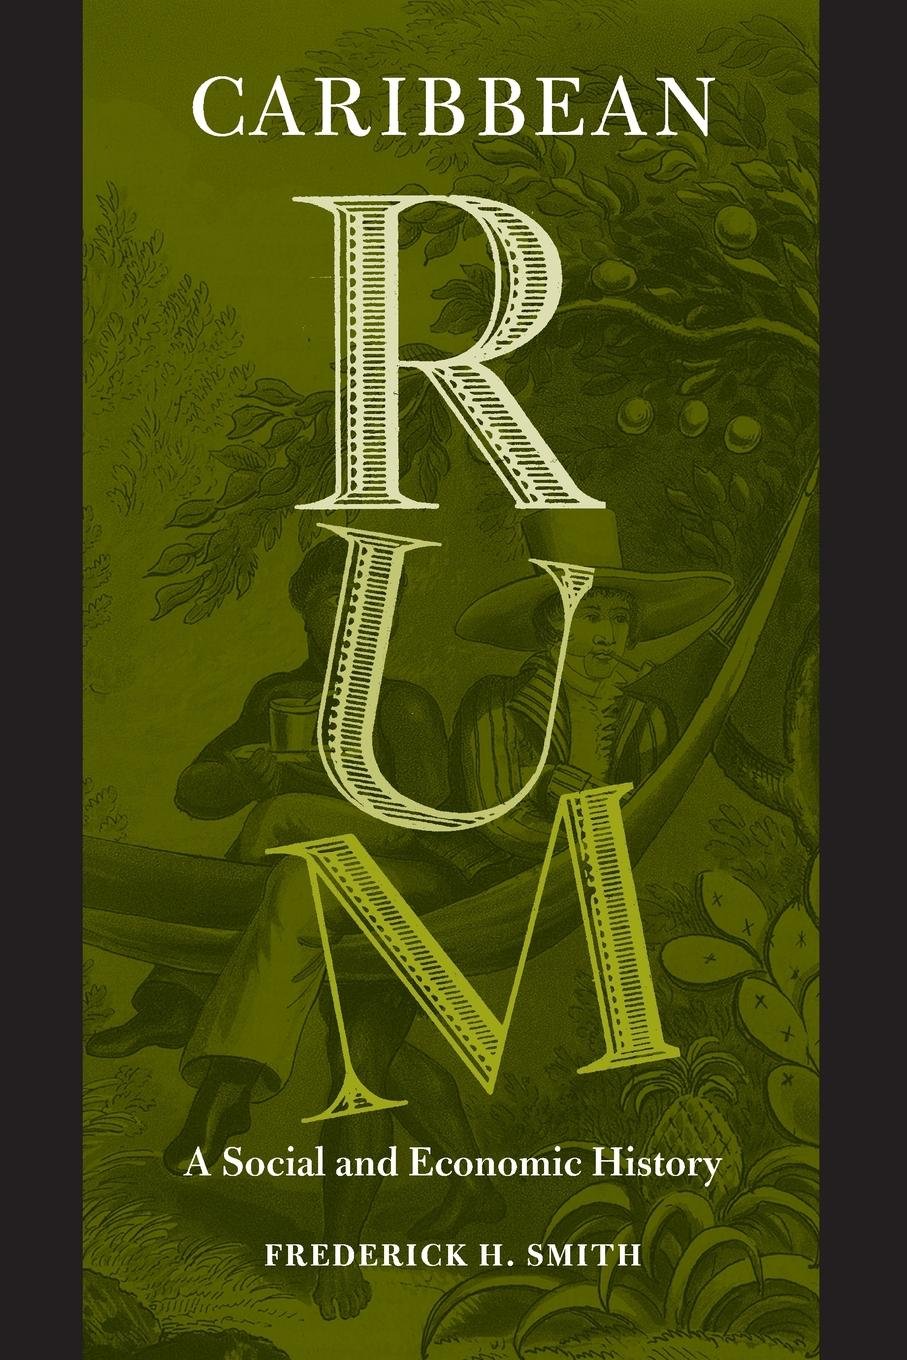 Caribbean rum